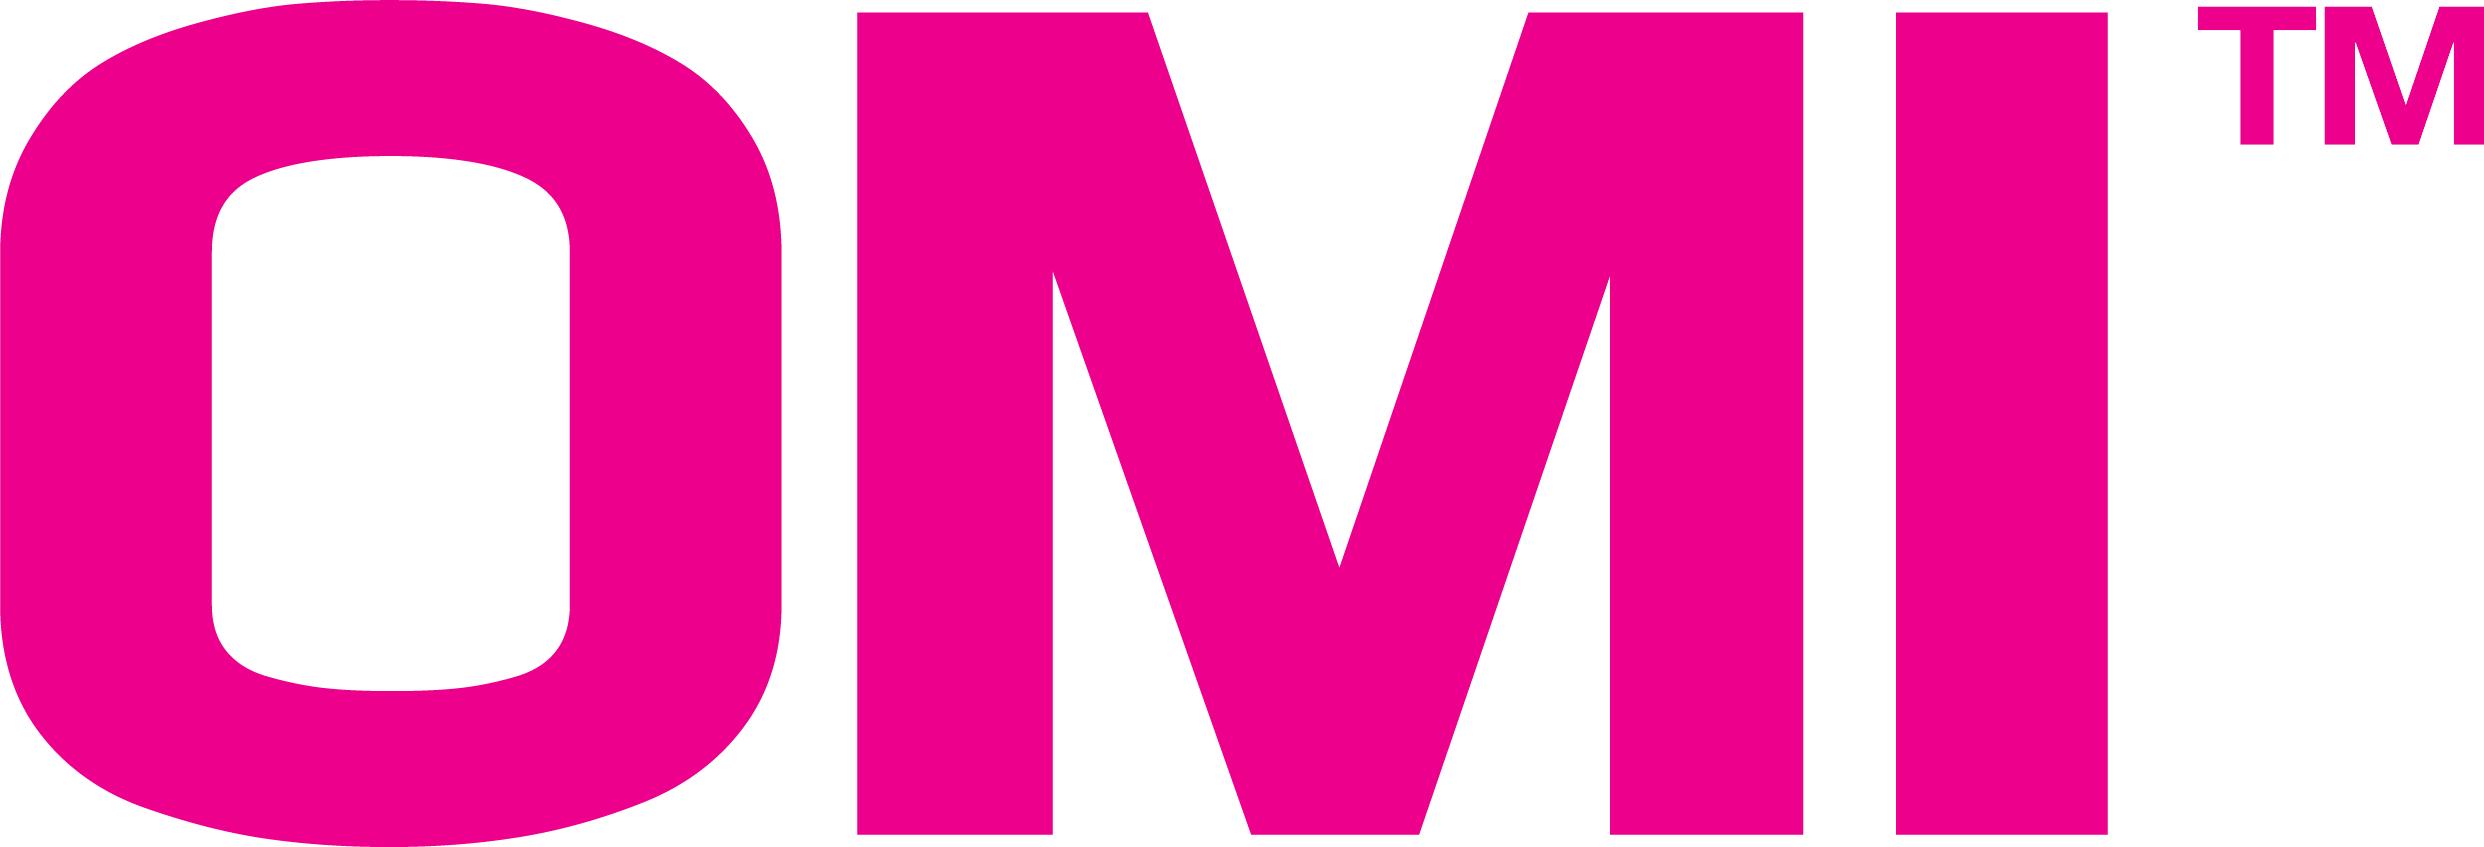 OMI Gaming Logo